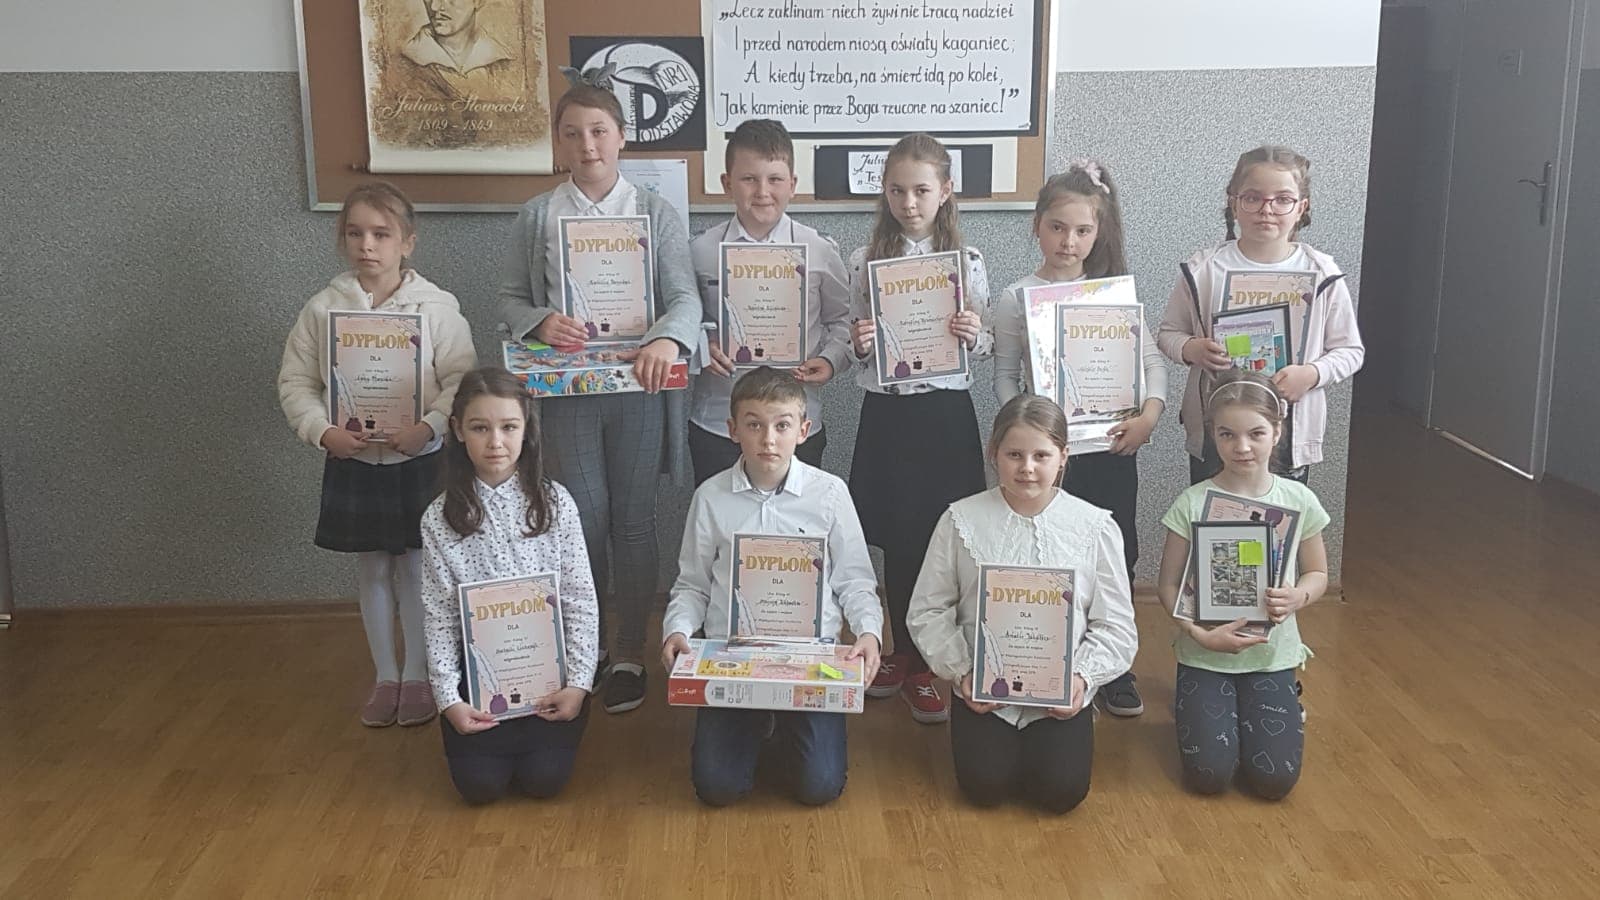 Zdjęcie przedstawia uczniów Szkoły Podstawowej Nr 1, uczestników Międzyszkolnego Konkursu Ortograficznego wraz z dyplomami i nagrodami rzeczowymi.